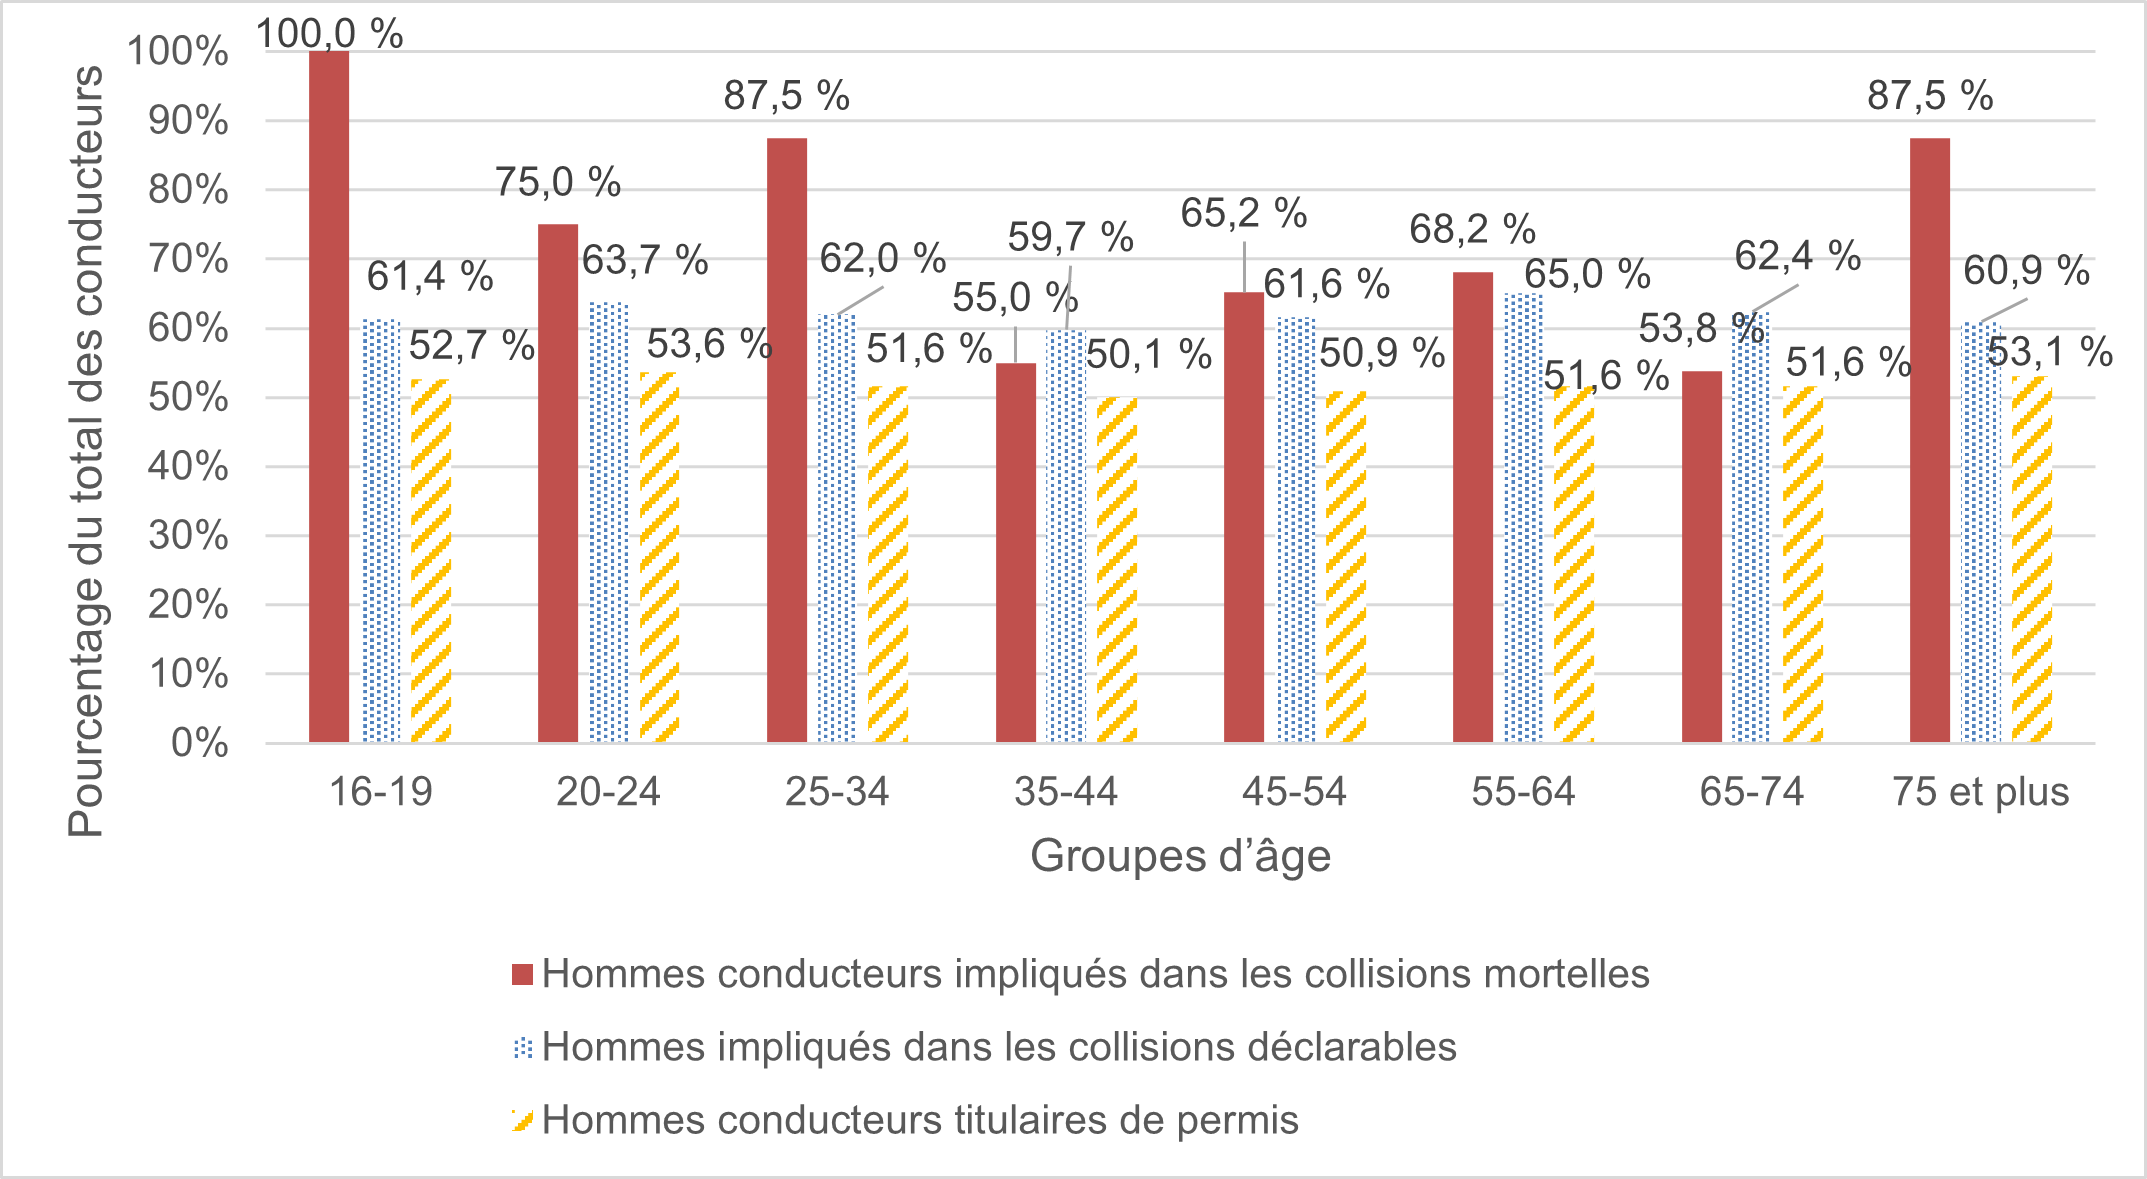 Figure 18 compare le pourcentage d’hommes dans chaque groupe d’âge impliqués dans les collisions mortelles et les collisions déclarables au pourcentage de conducteurs de sexe masculin titulaires de permis dans chaque groupe d’âge. 